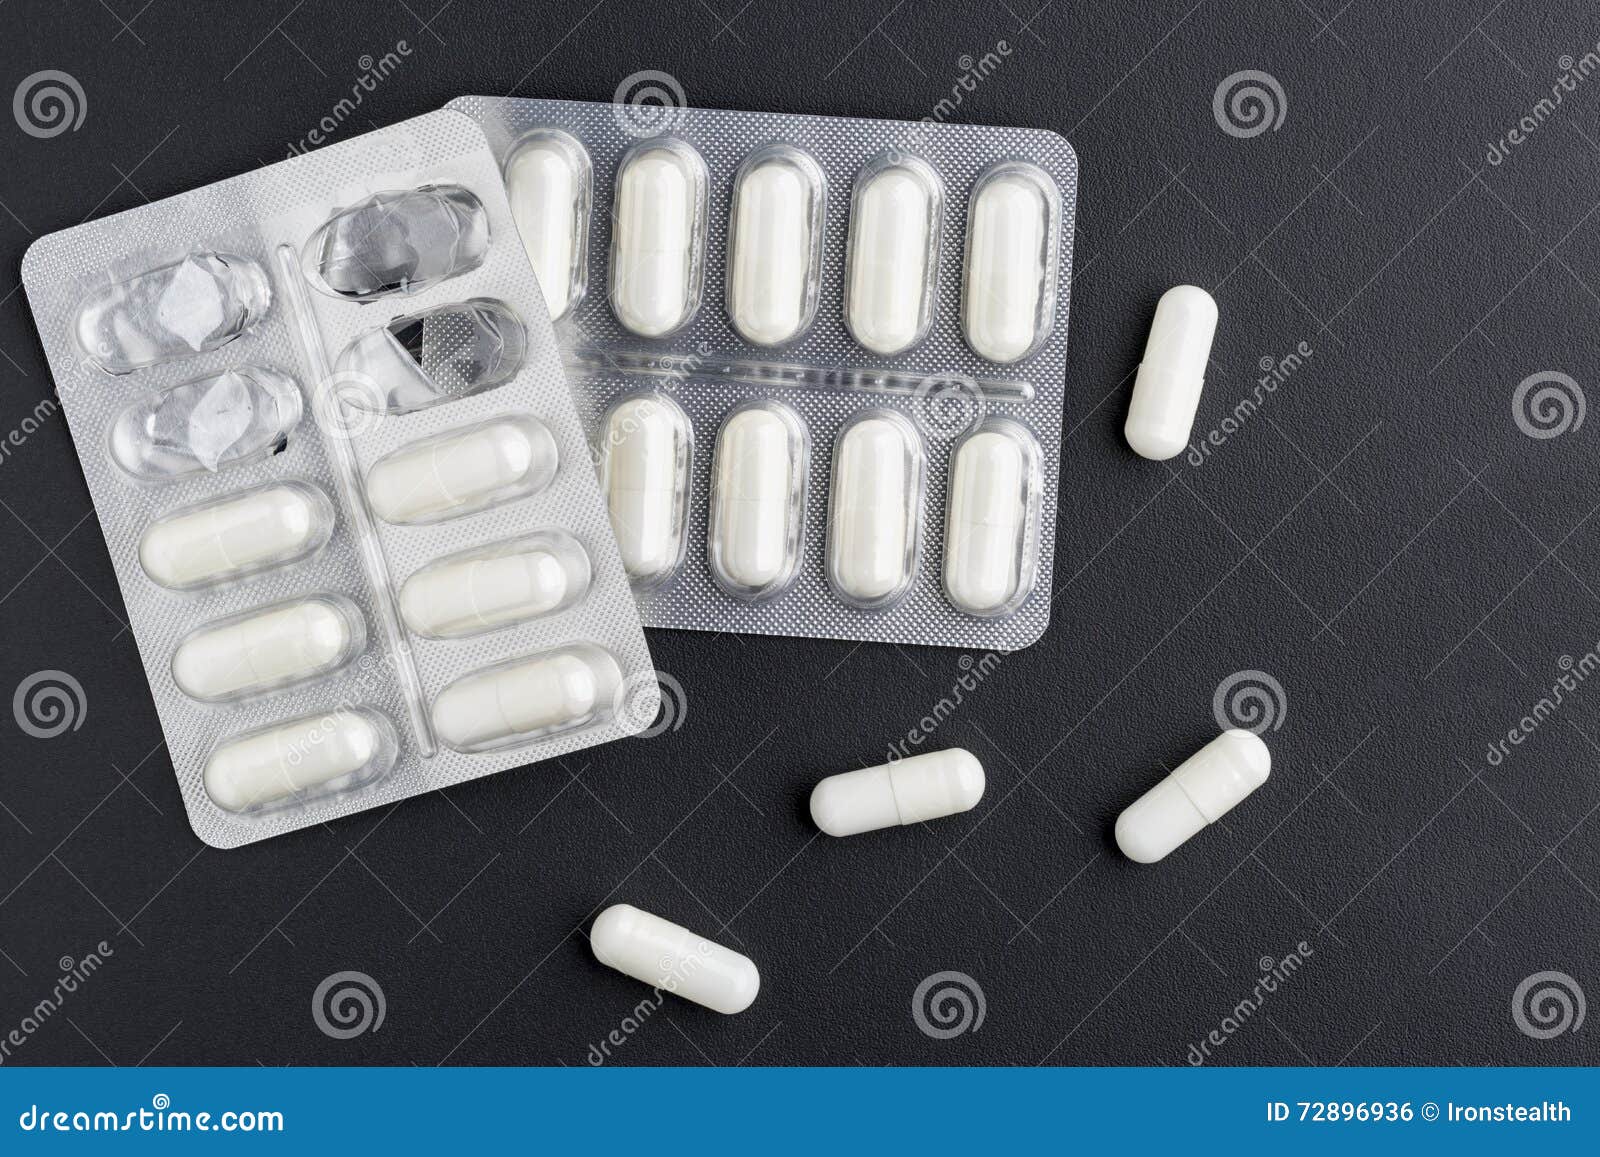 esteroides para musculos en pastillas: ¿Realmente lo necesita? ¡Esto le ayudará a decidir!